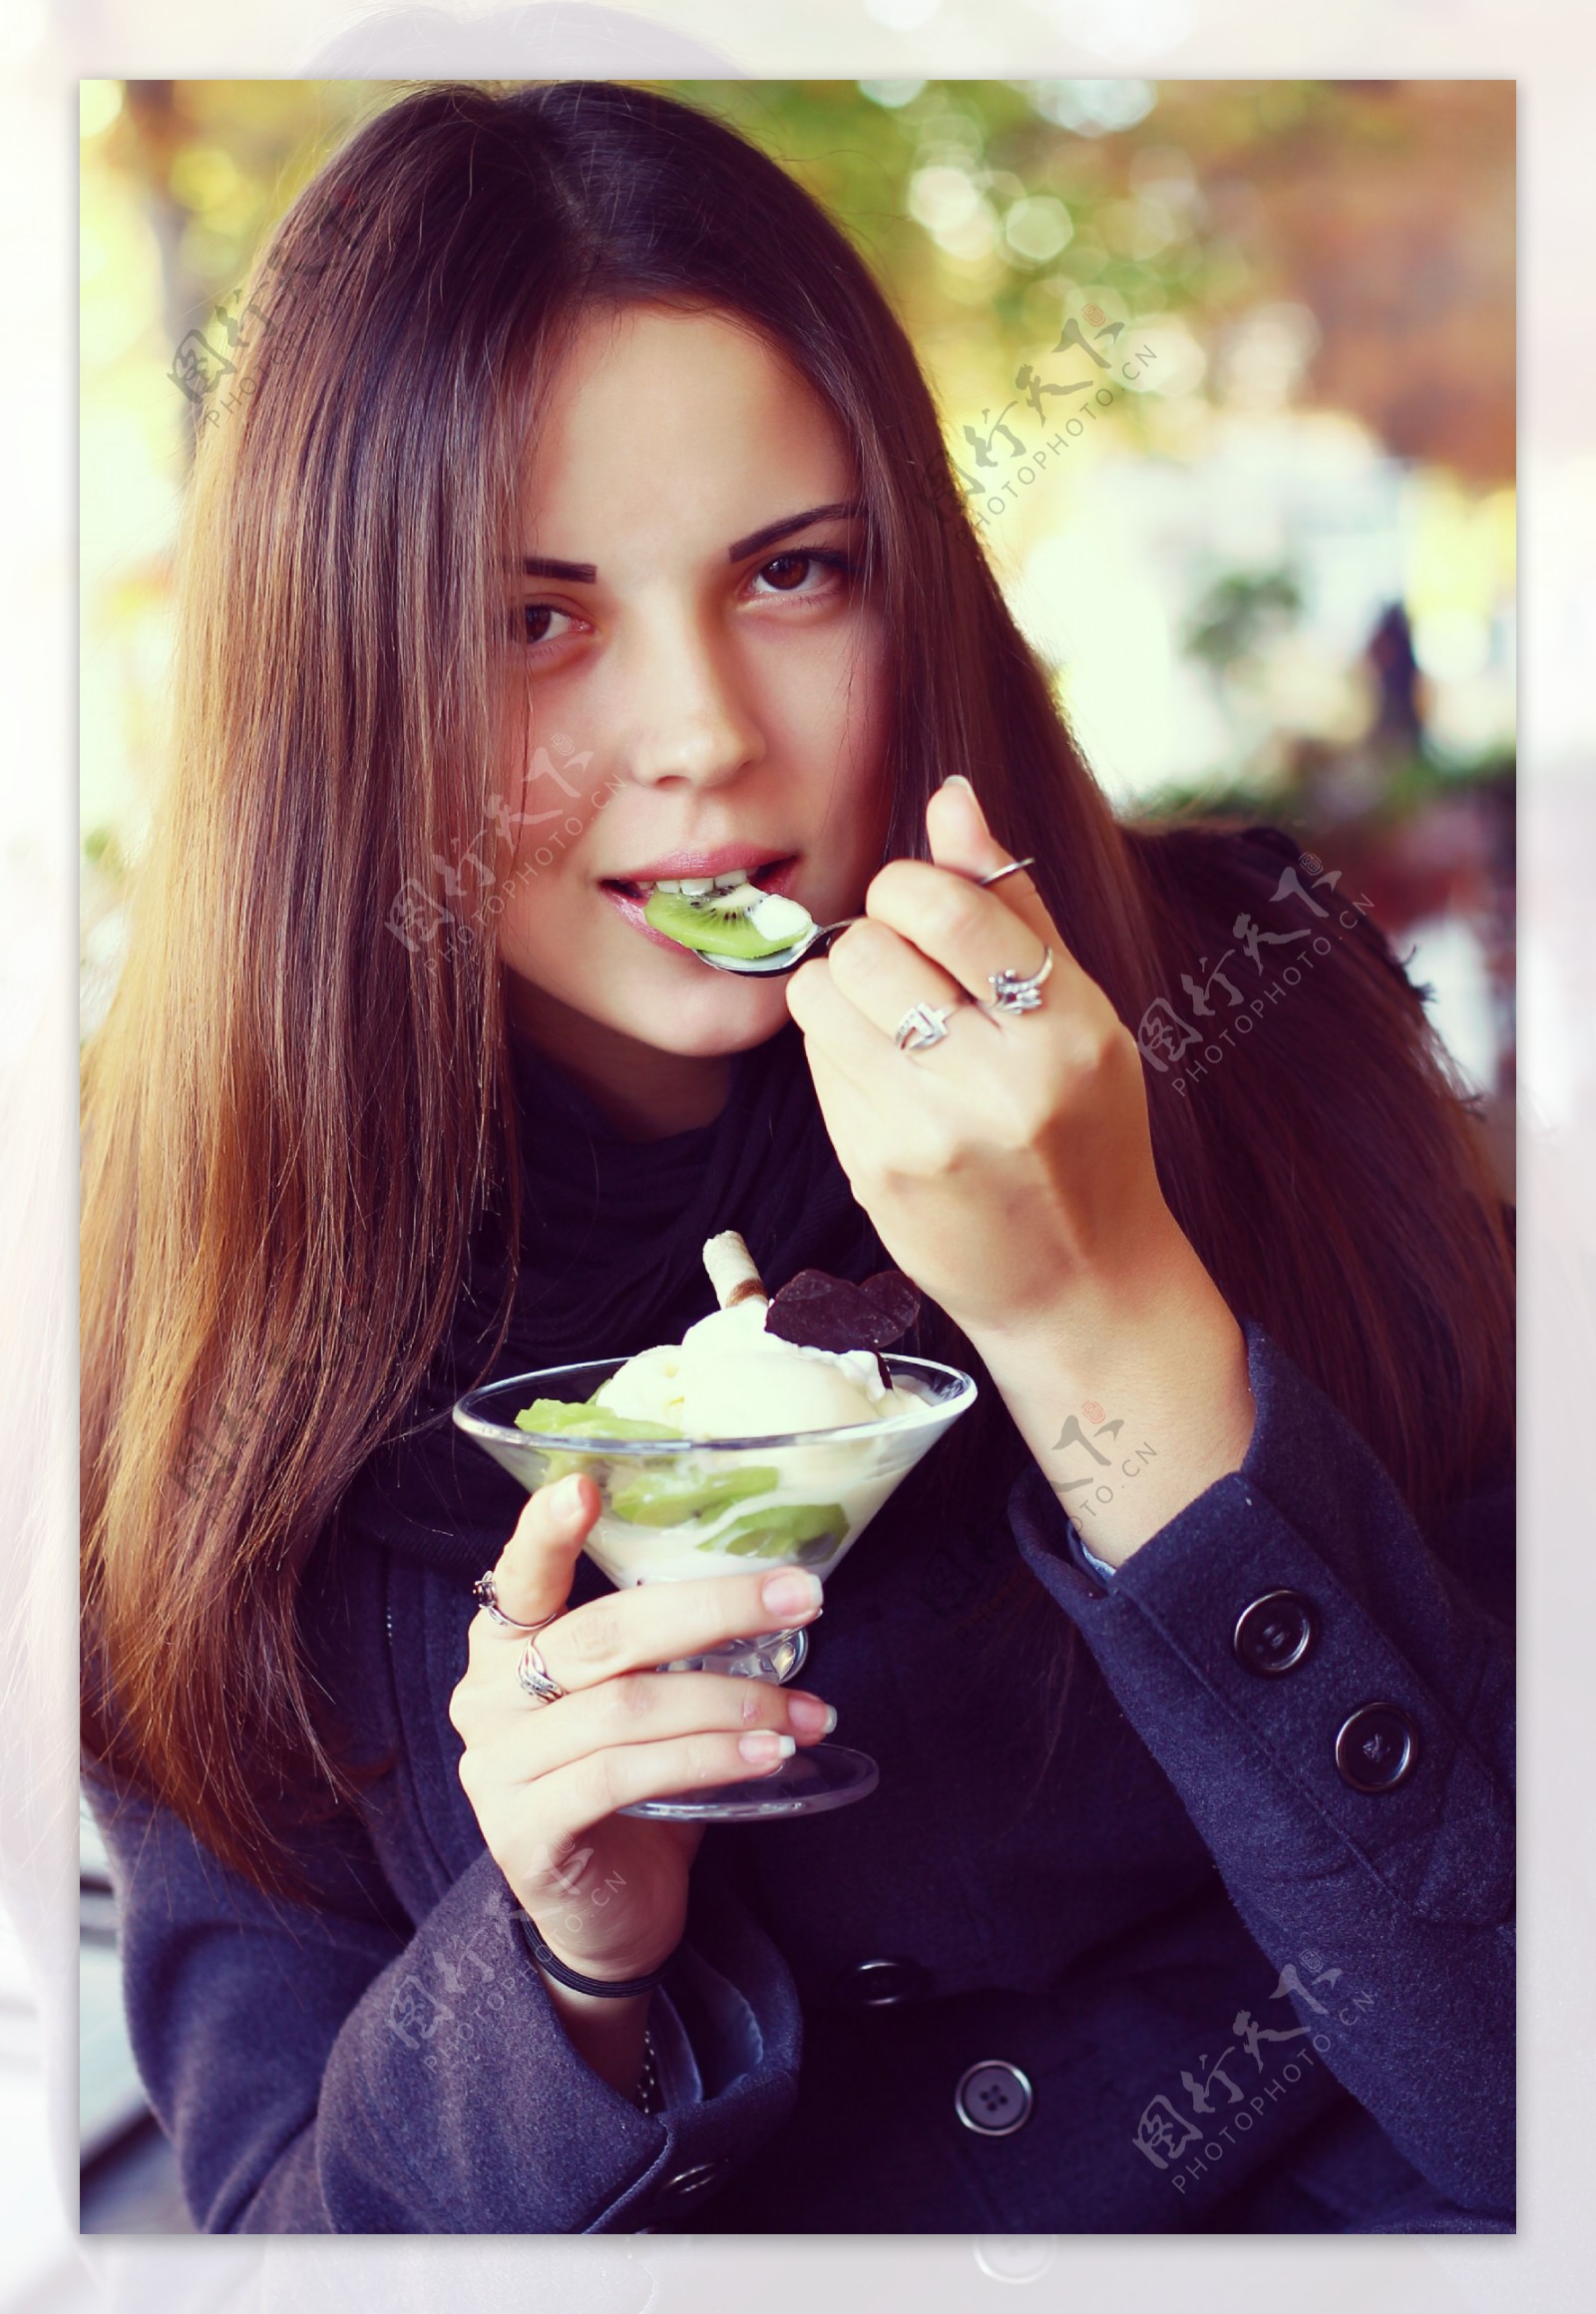 有秀丽构成的性感的妇女吃冰淇凌的 库存图片. 图片 包括有 - 112680425